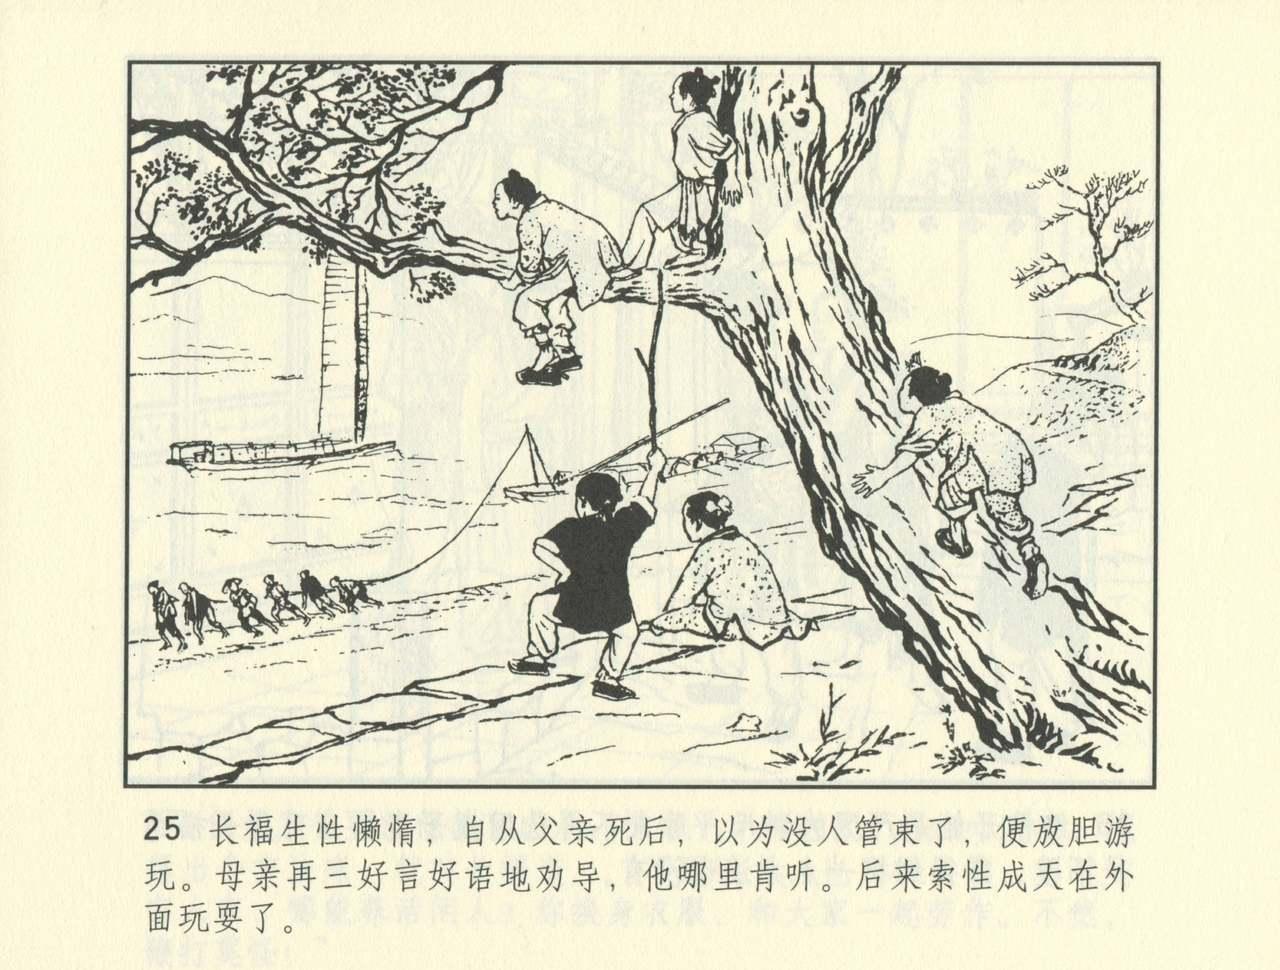 聊斋志异 张玮等绘 天津人民美术出版社 卷二十一 ~ 三十 497